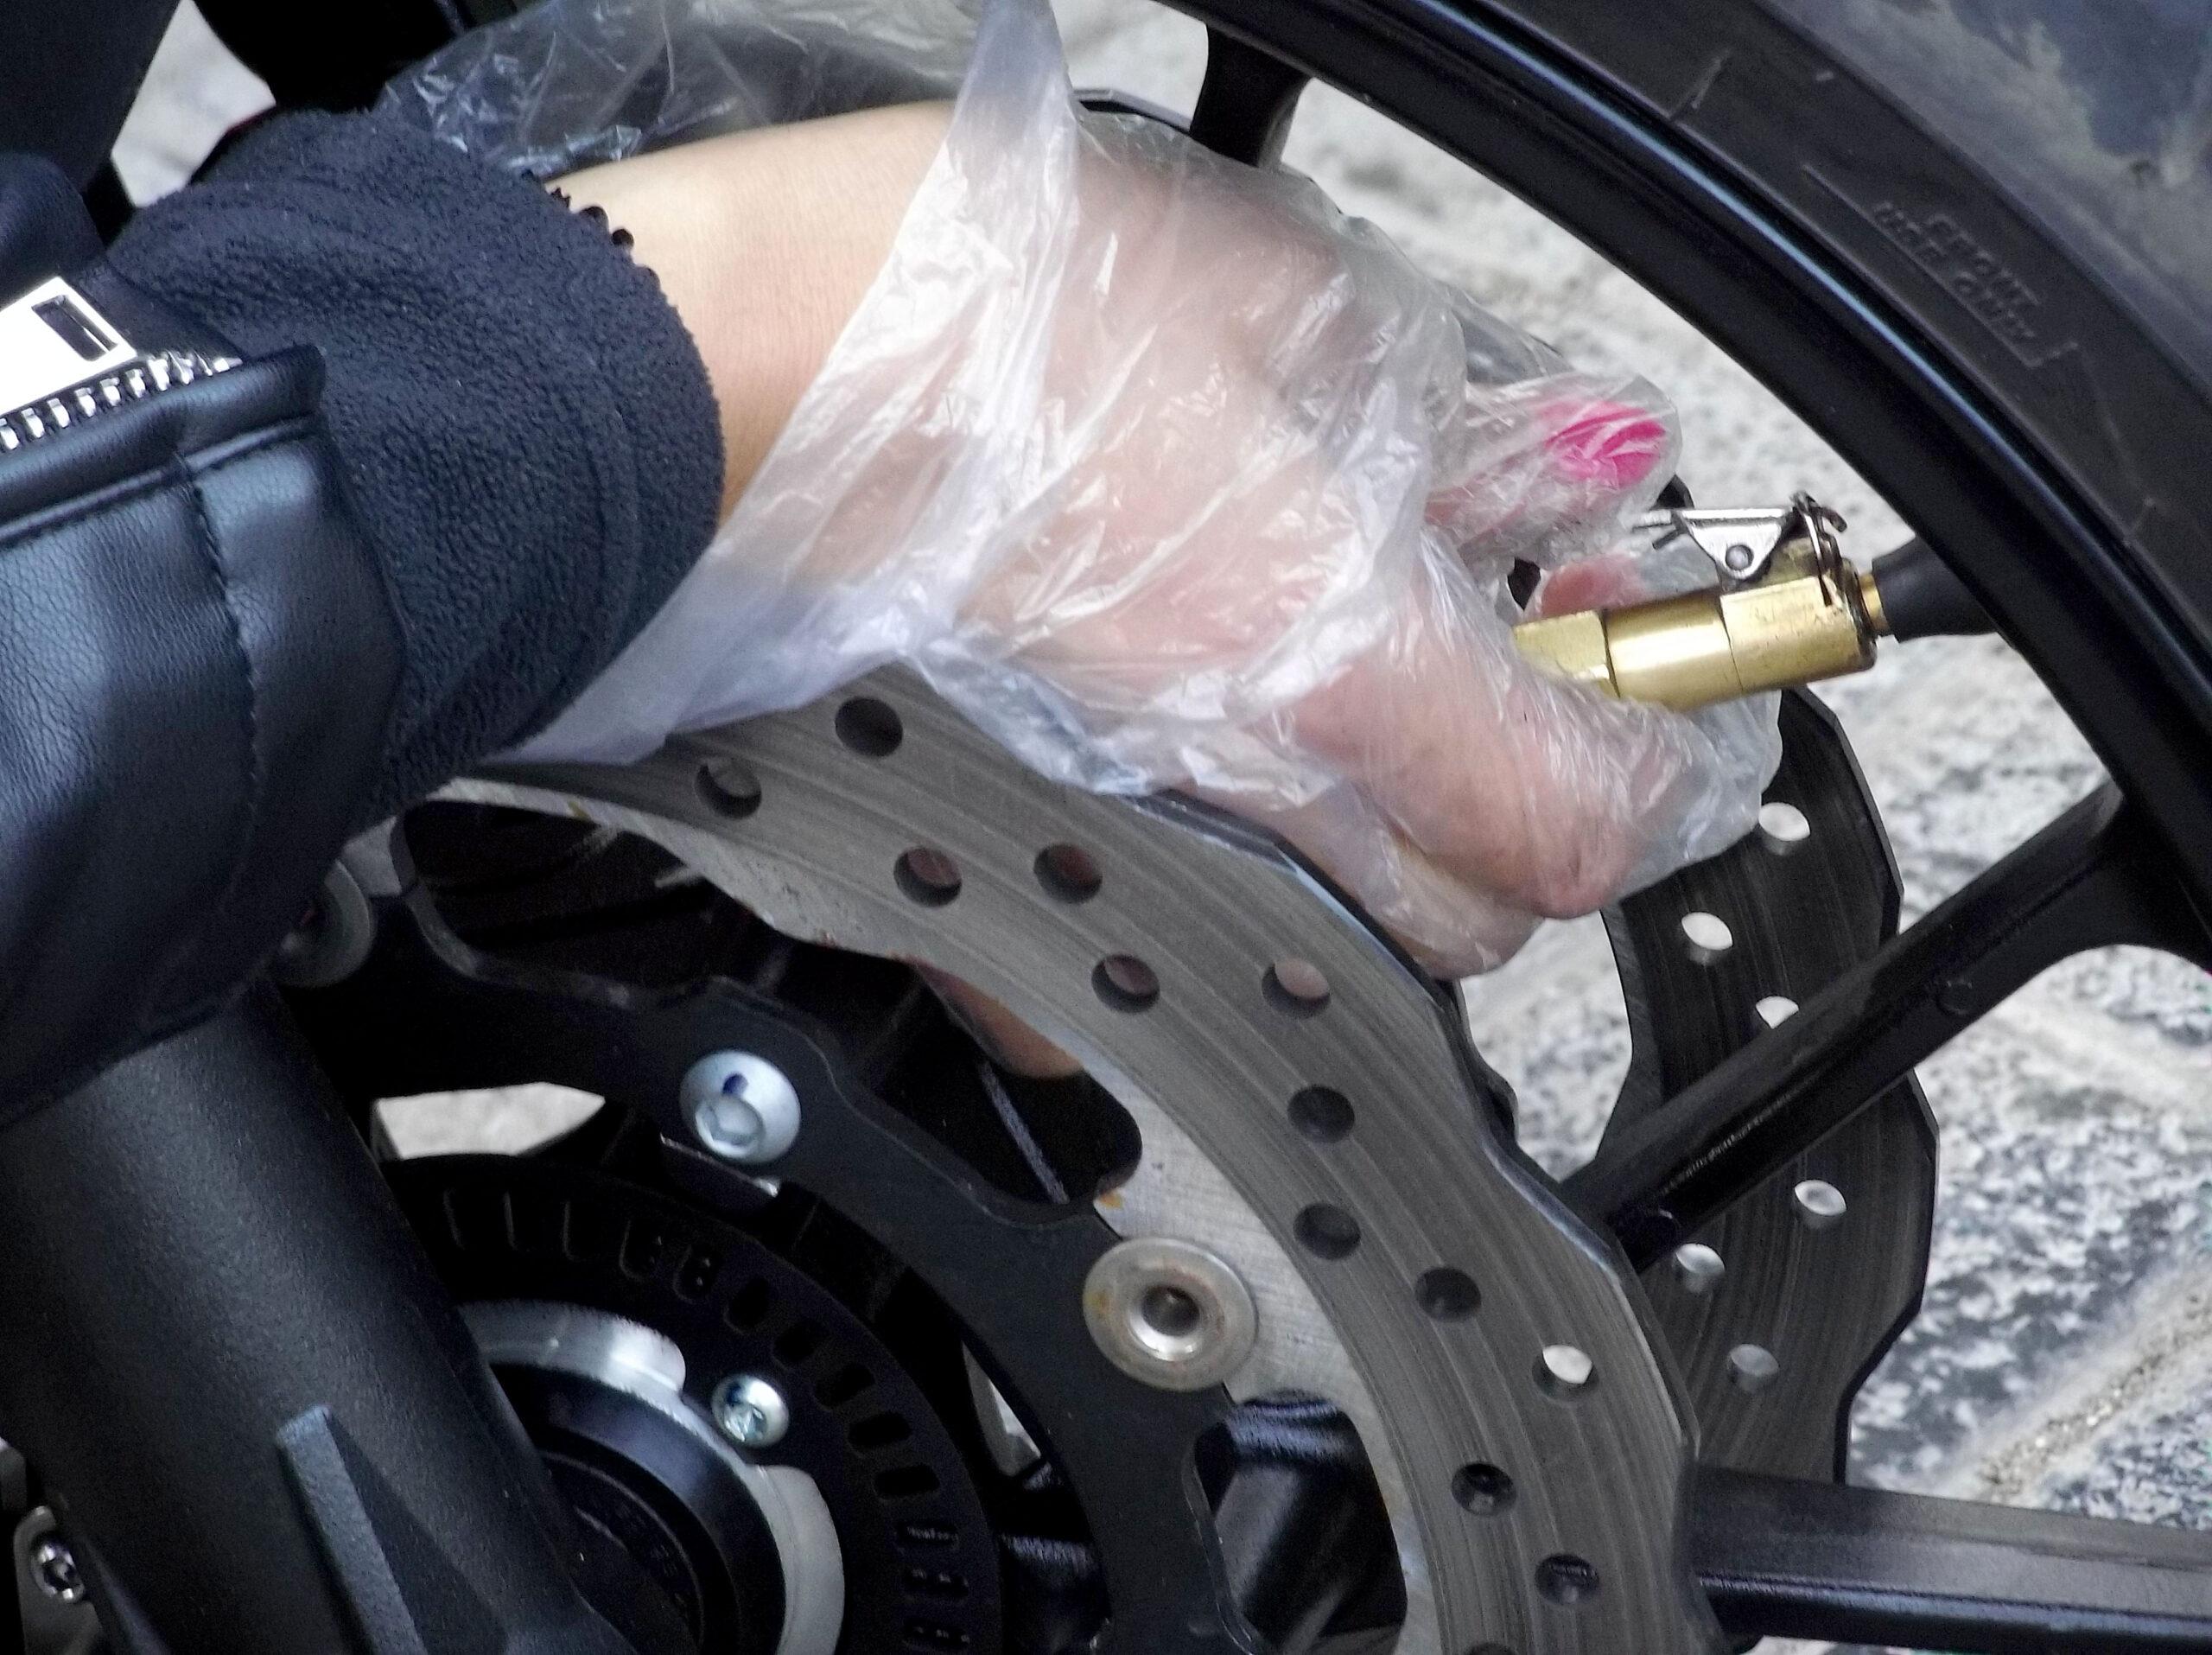 Pressione pneumatici moto: consigli non banali per controllarla